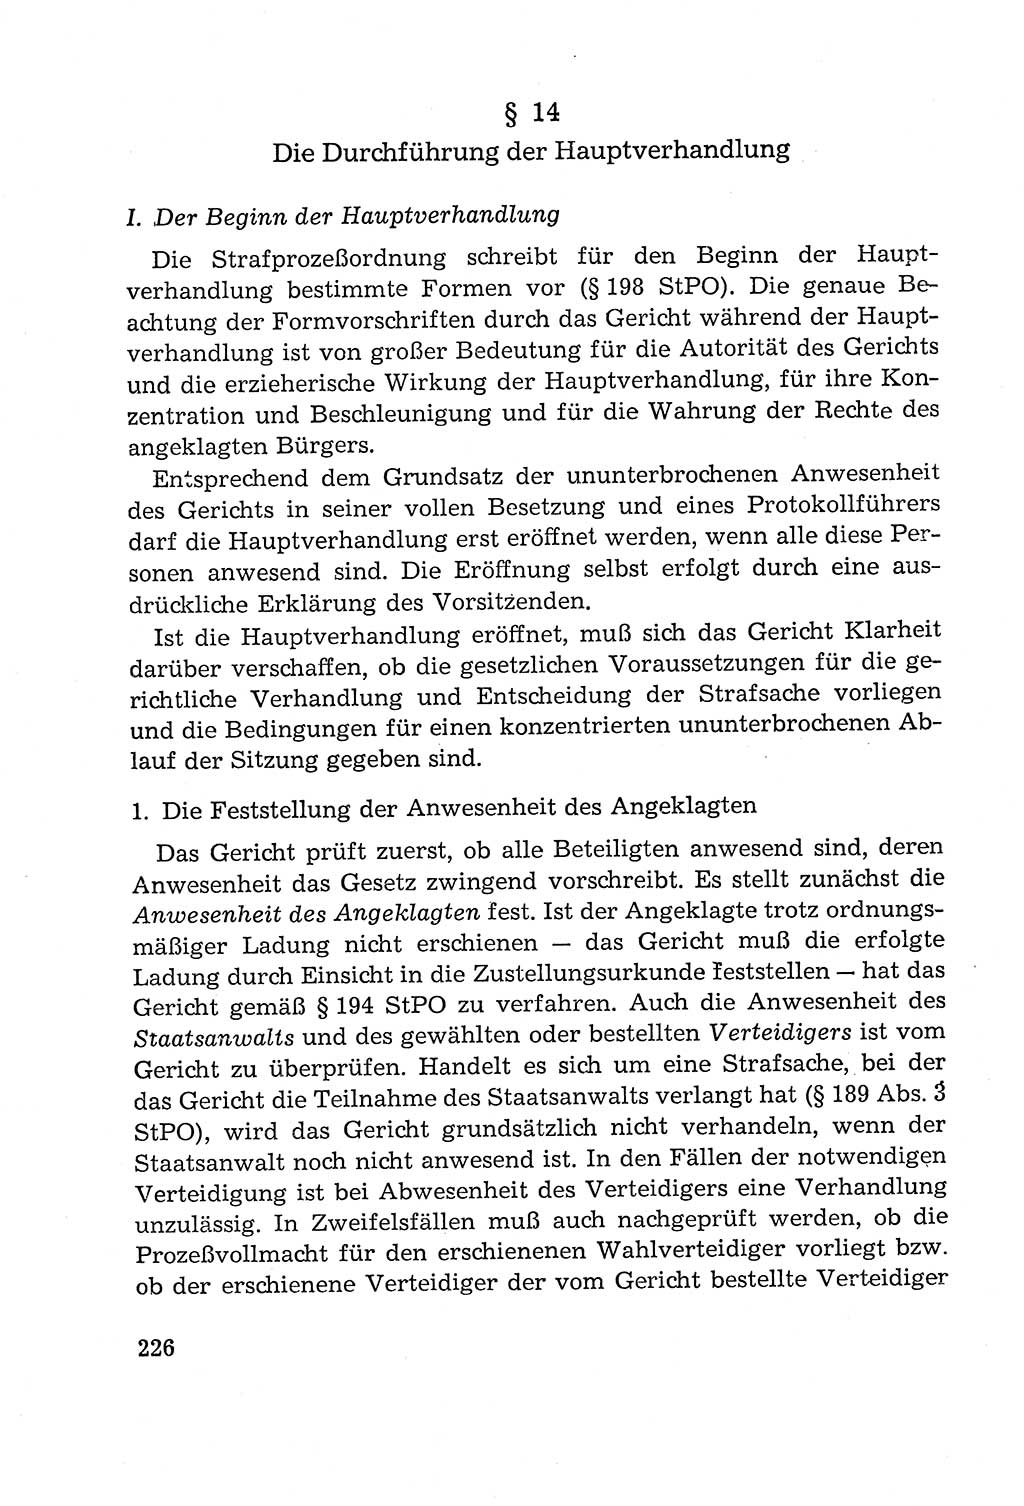 Leitfaden des Strafprozeßrechts der Deutschen Demokratischen Republik (DDR) 1959, Seite 226 (LF StPR DDR 1959, S. 226)